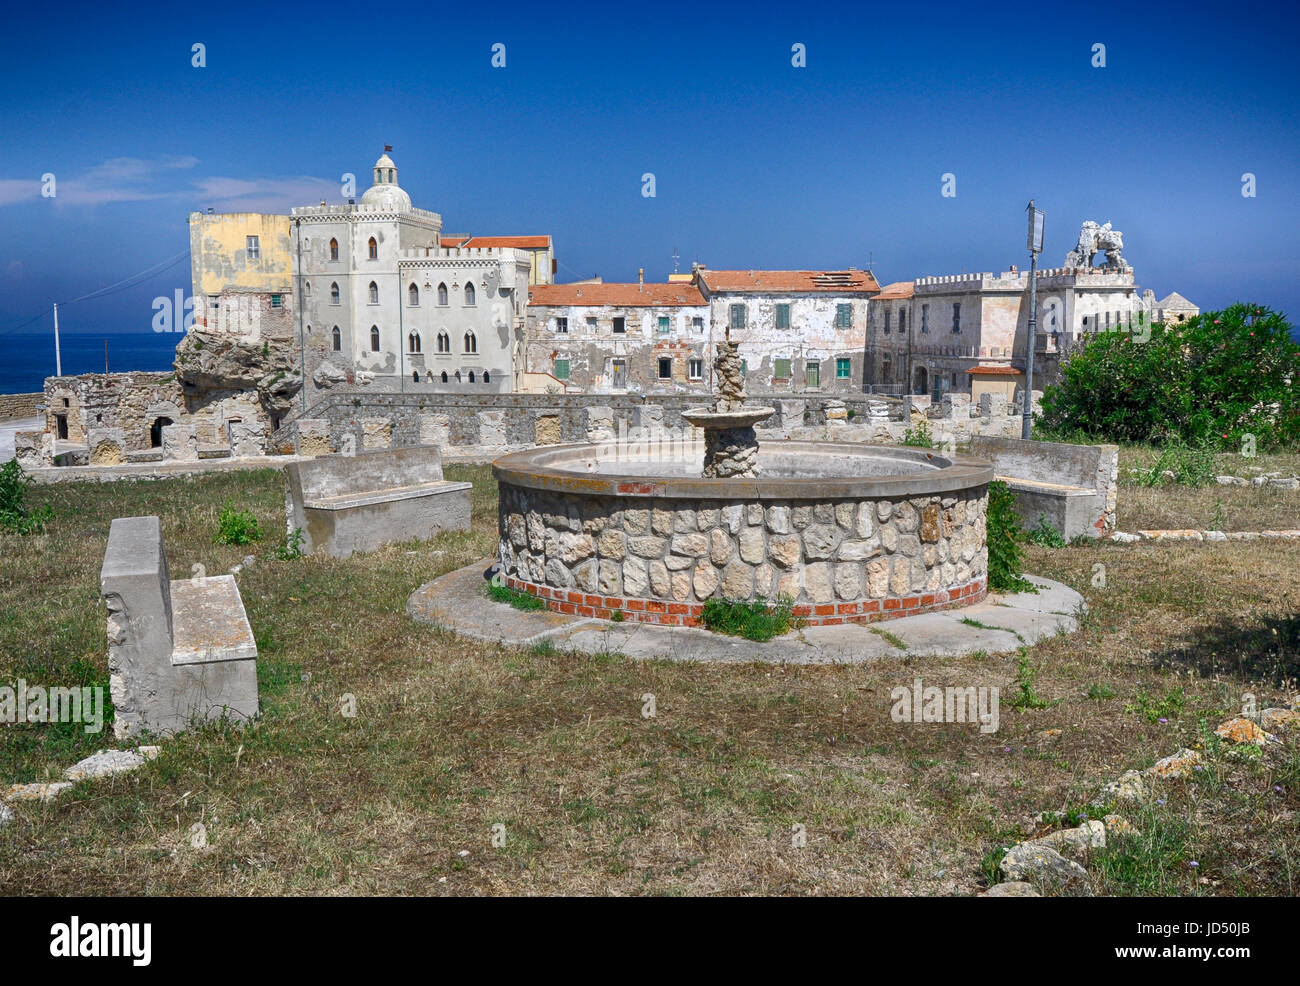 Le Palazzo della Specola est un complexe fortifié situé sur l'île de Pianosa. Banque D'Images